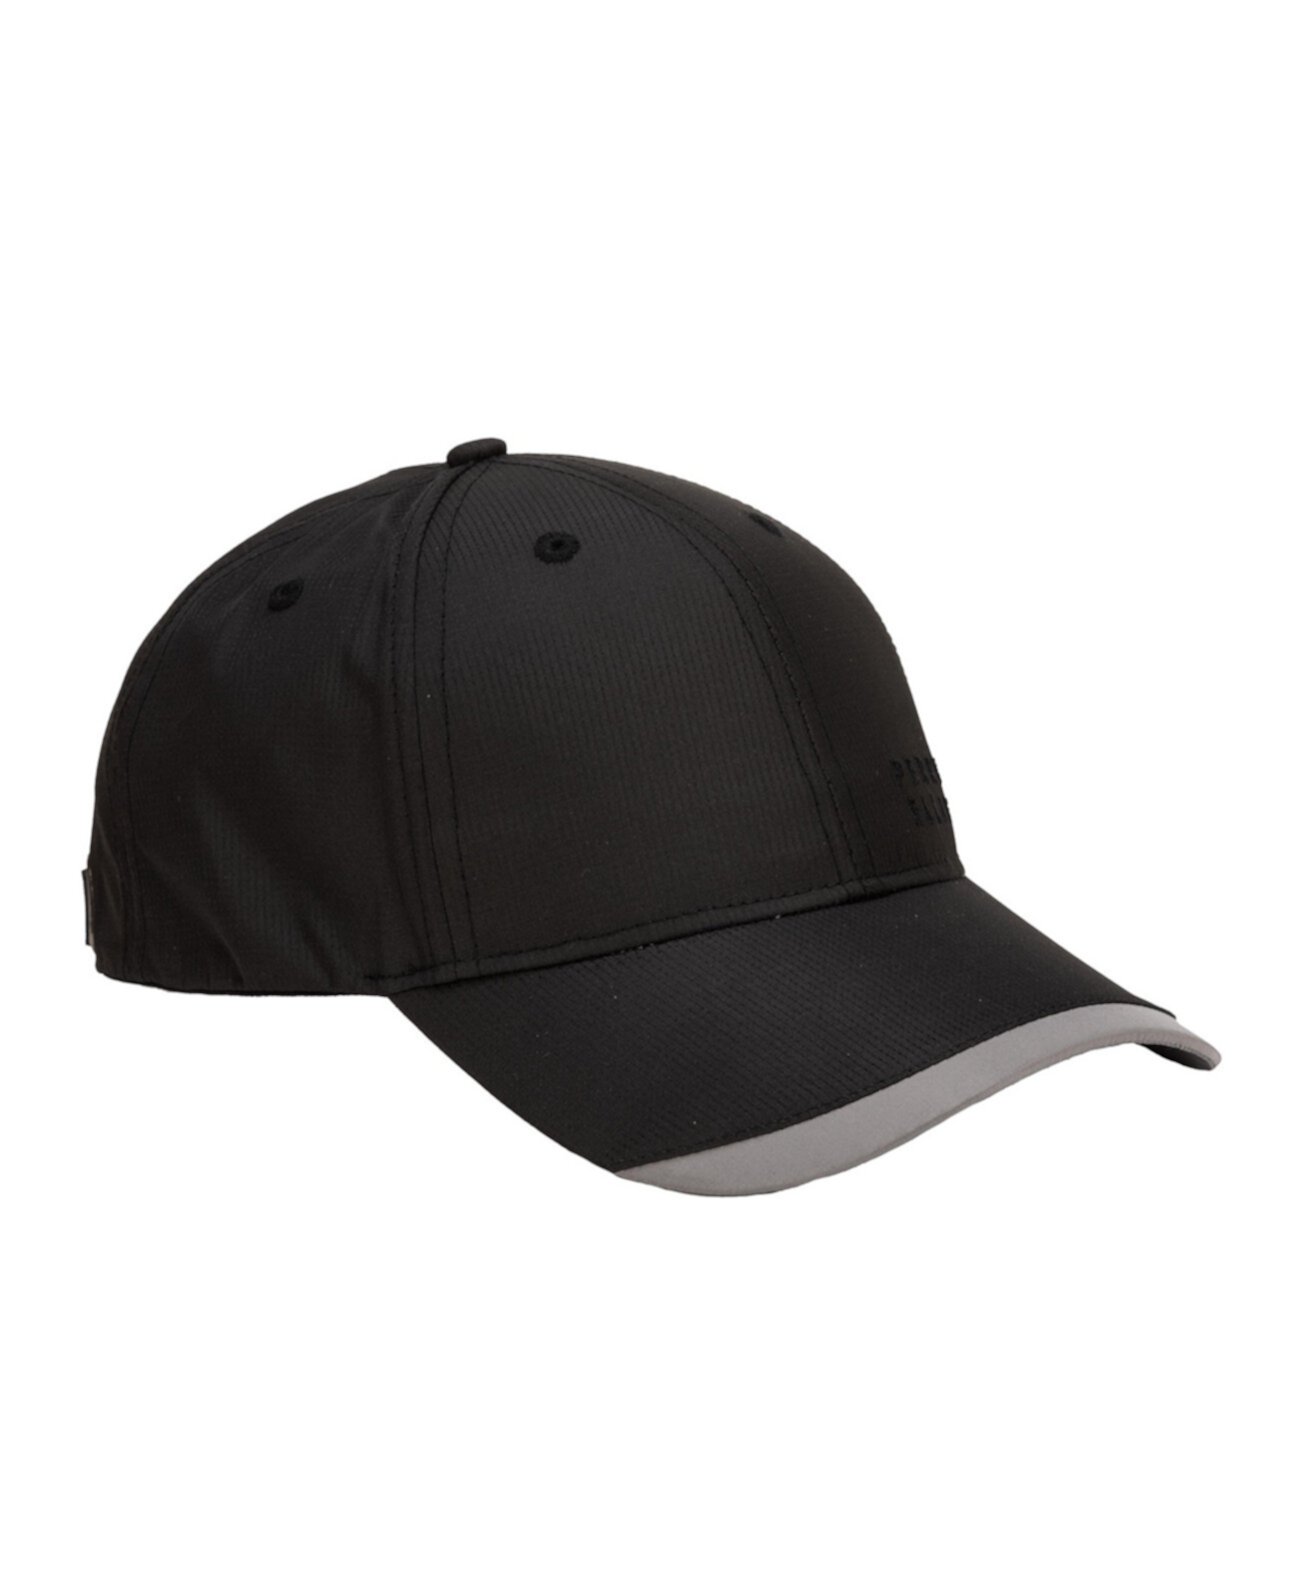 Низкопрофильная мужская бейсбольная кепка для гольфа из рипстопа, вышитый логотип Perry Ellis